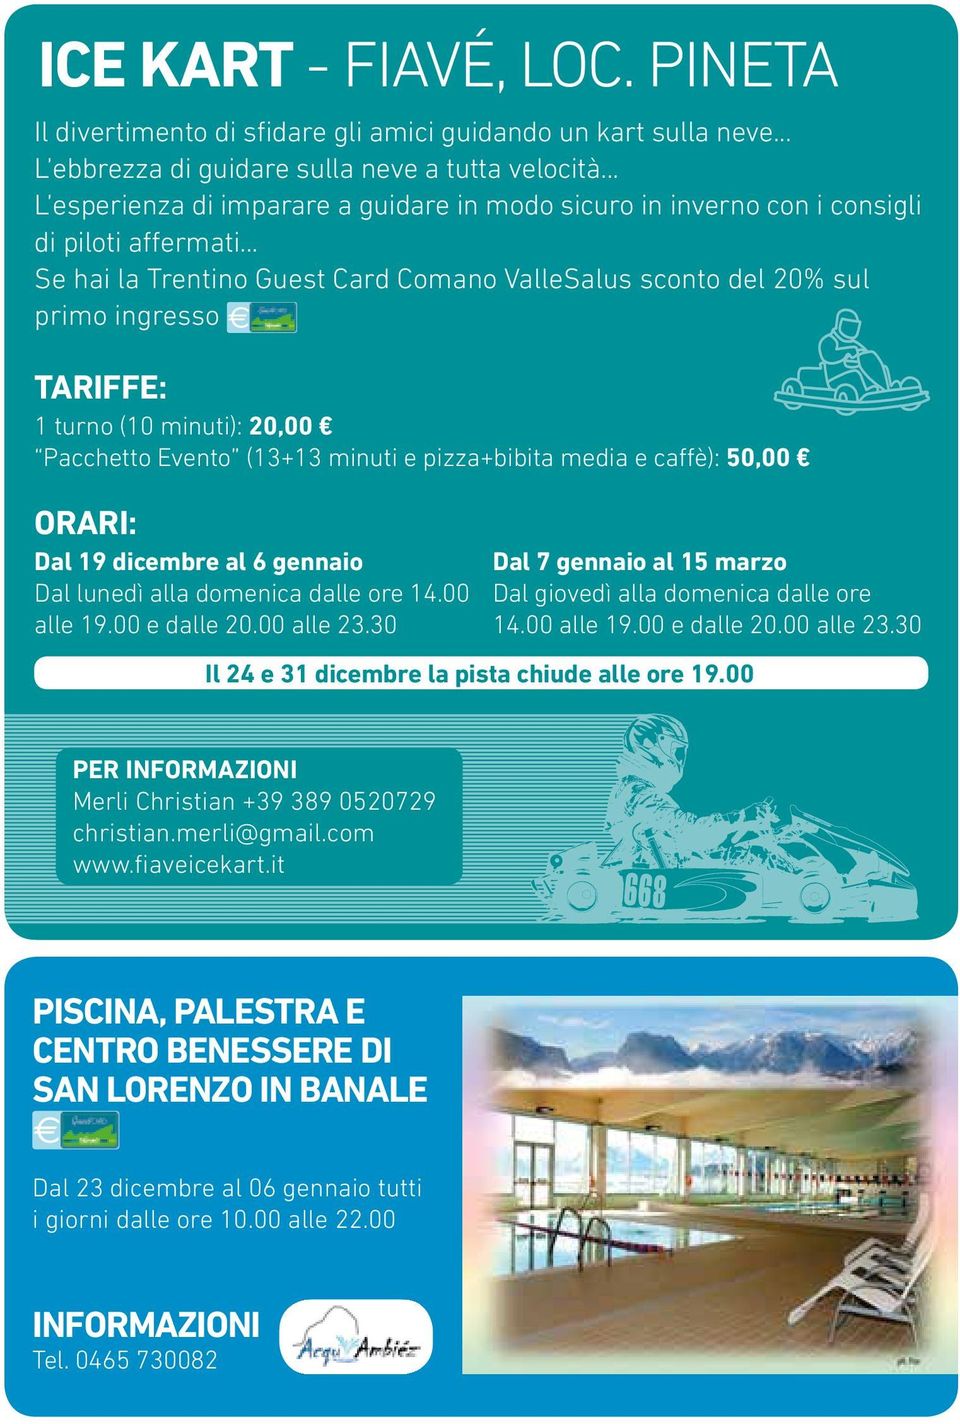 .. Se hai la Trentino Guest Card Comano ValleSalus sconto del 20% sul primo ingresso TARIFFE: 1 turno (10 minuti): 20,00 Pacchetto Evento (13+13 minuti e pizza+bibita media e caffè): 50,00 ORARI: Dal